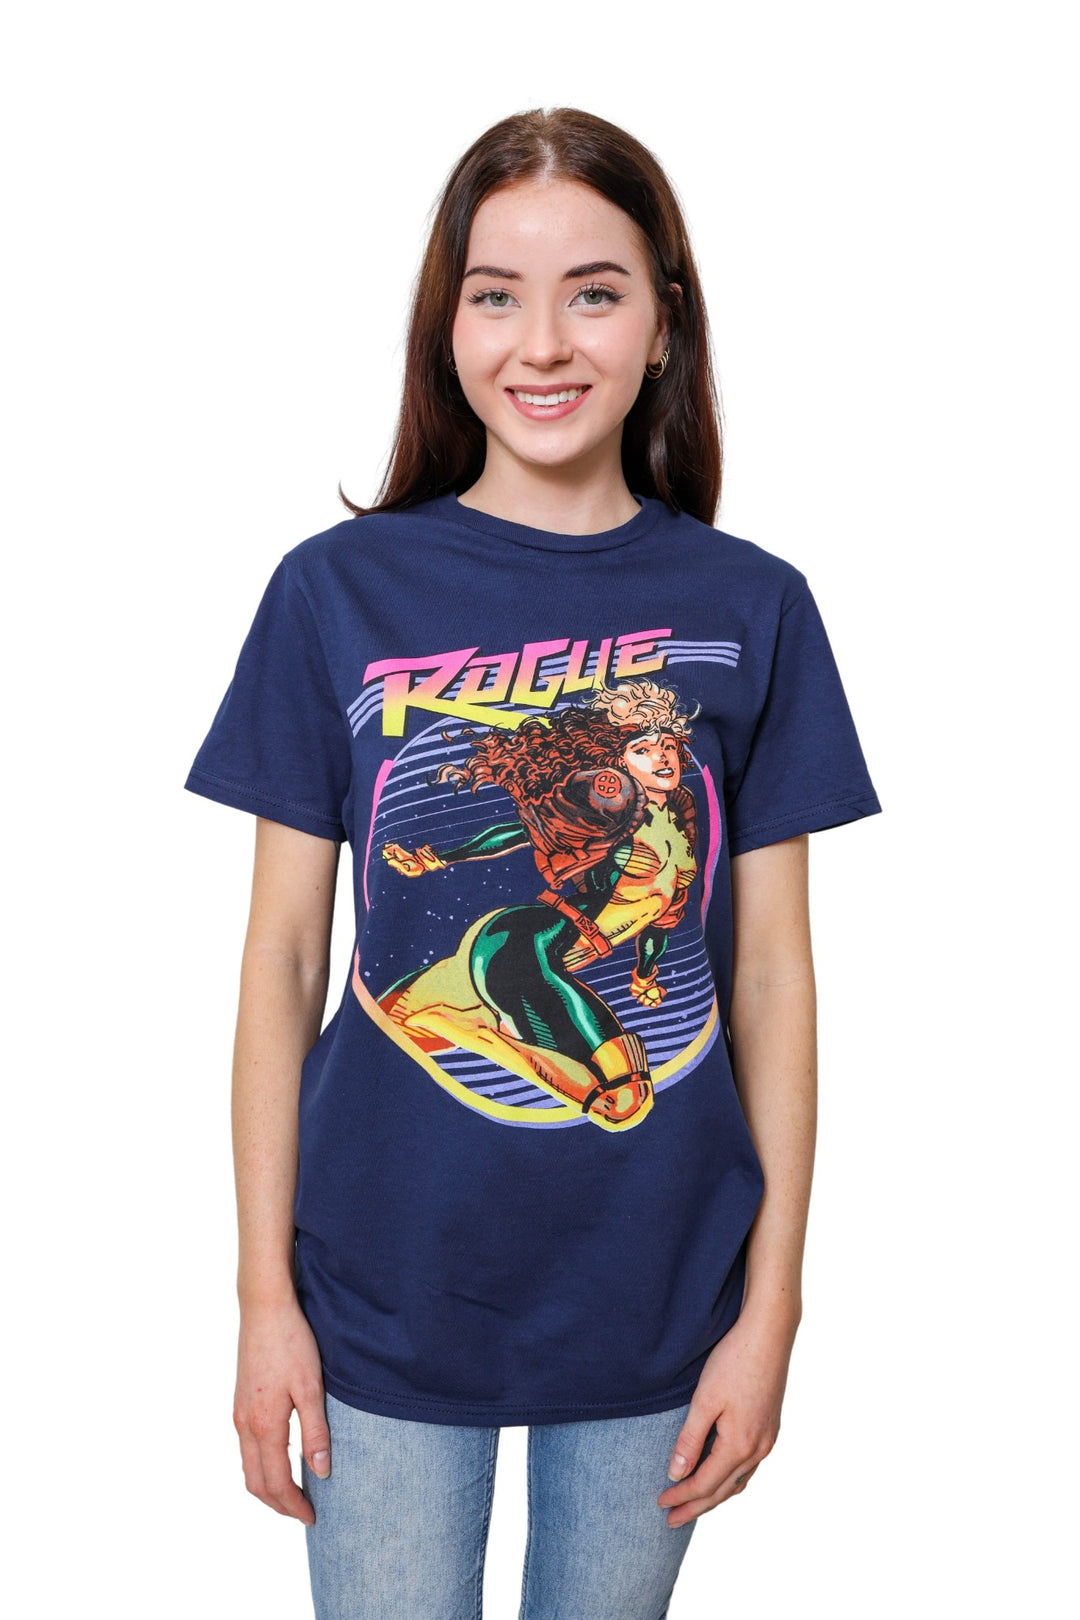 X-Men Rogue 90's Space Marvel Comics Adult T-Shirt